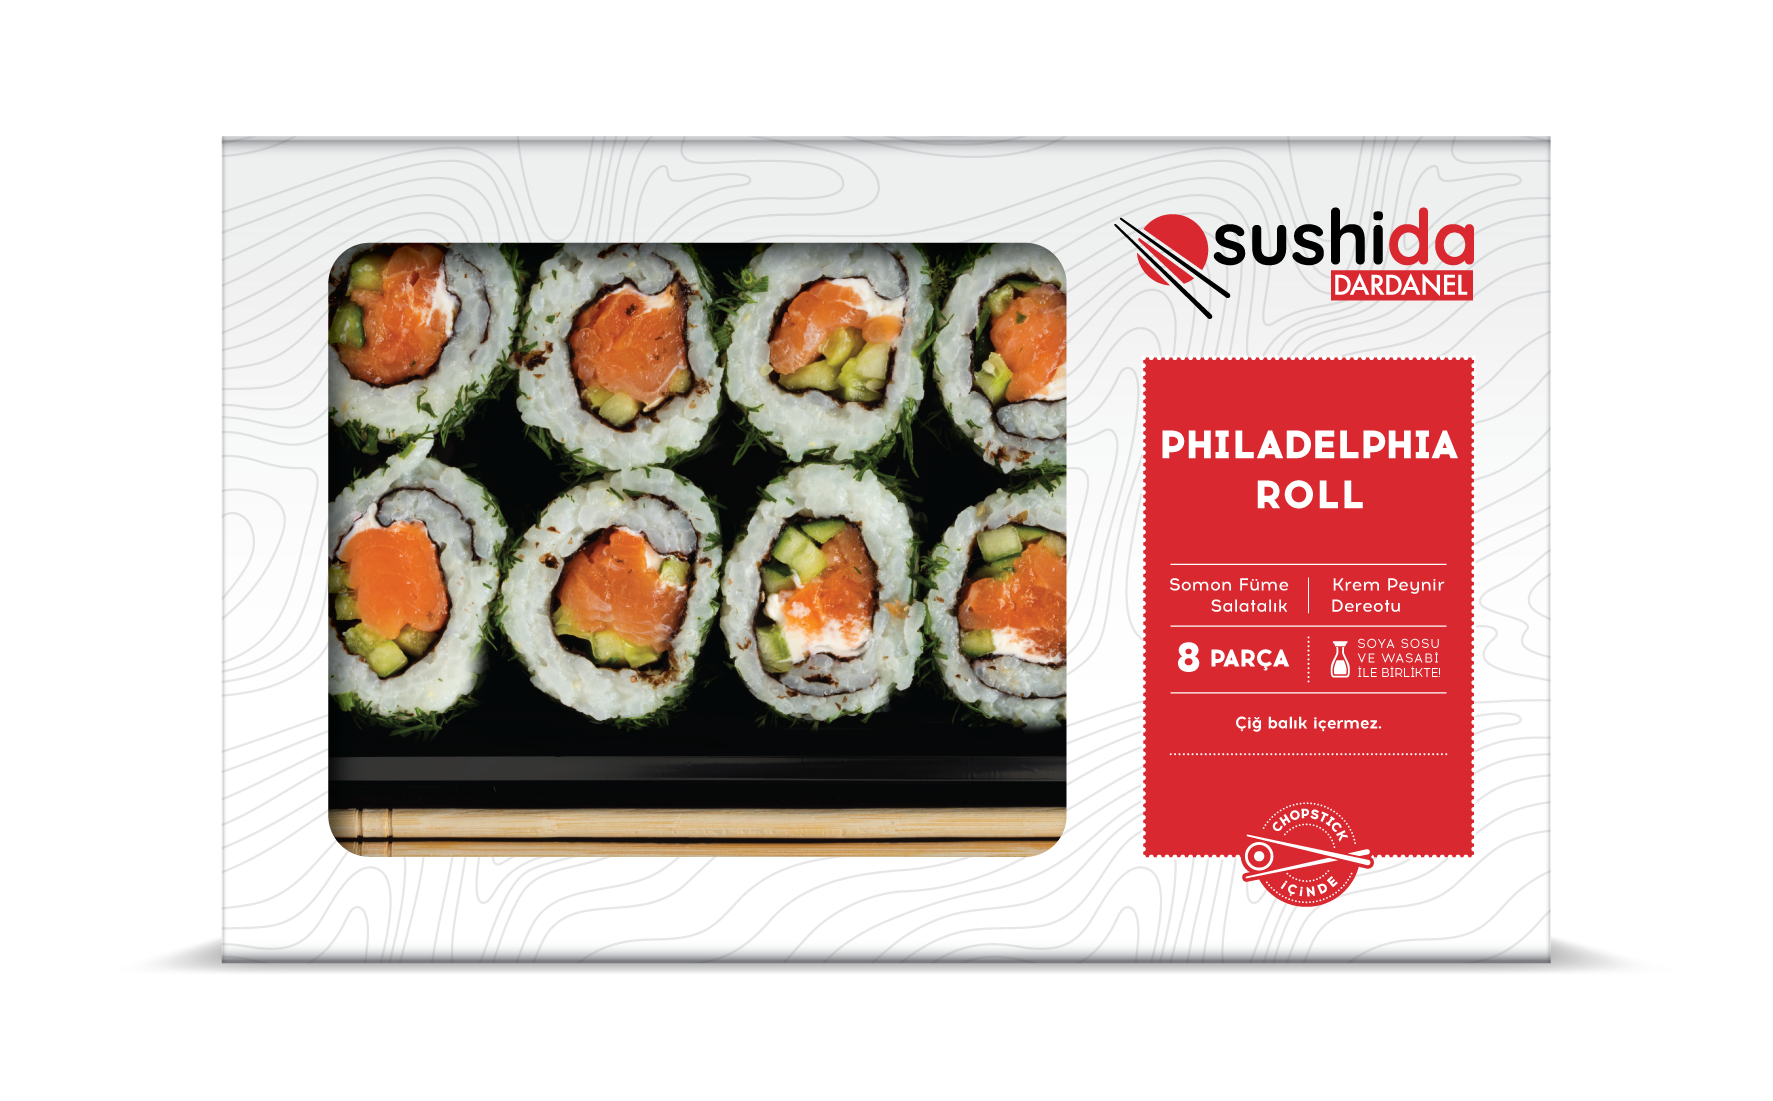 Dardanel Sushida ile istediğin an, istediğin yerde sushi keyfi